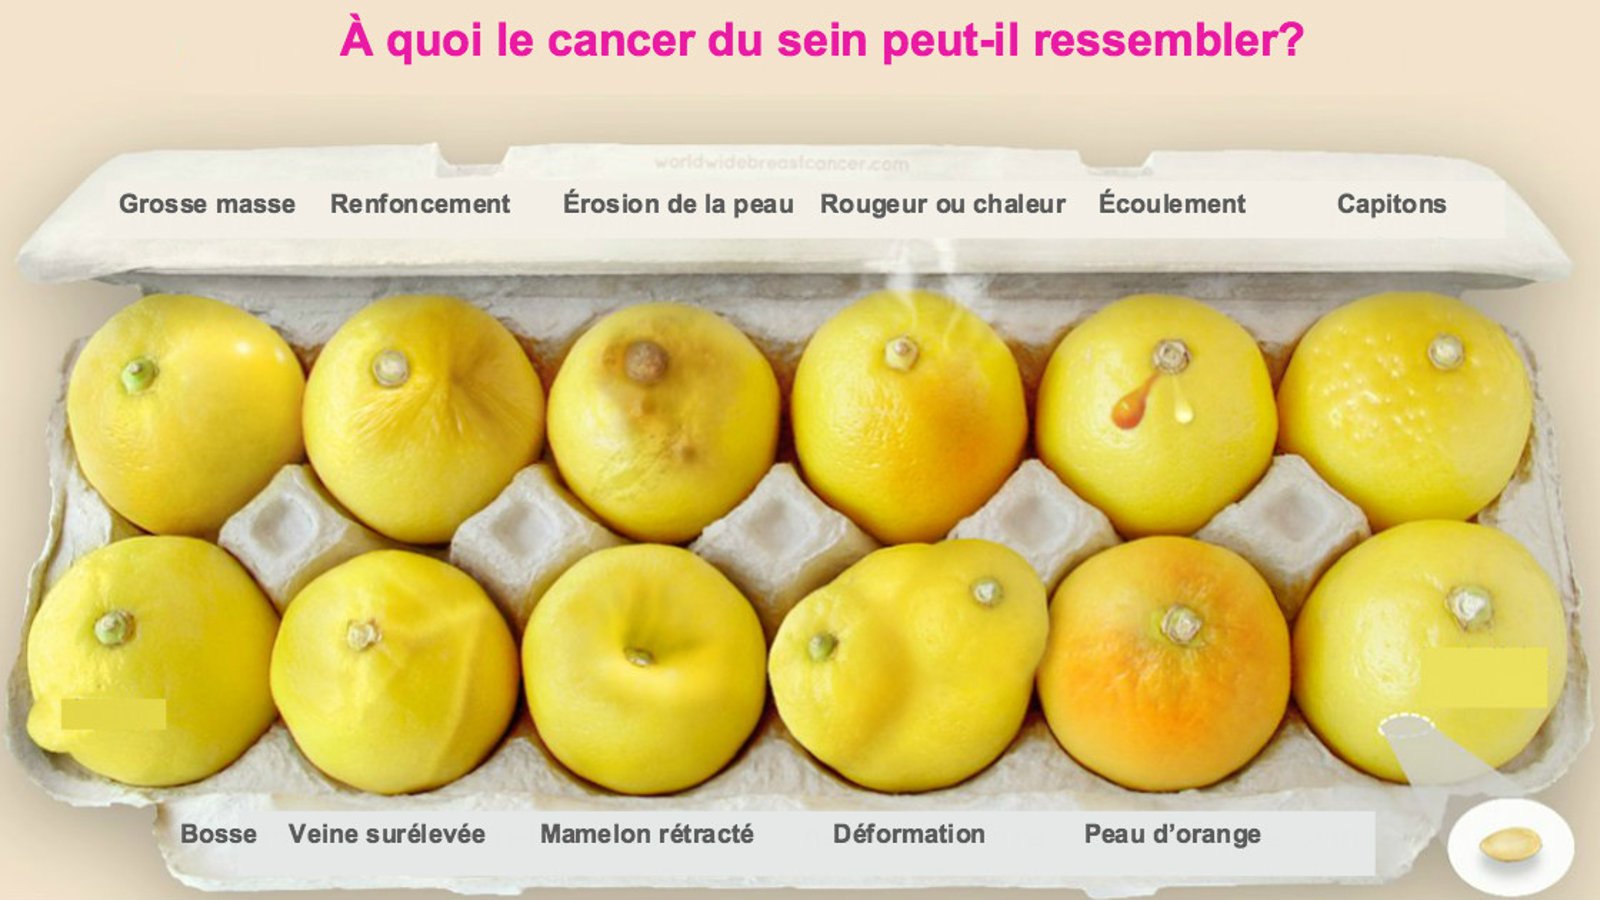 Ces citrons vous montrent 12 signes du cancer du sein qu'aucune femme ne devrait ignorer